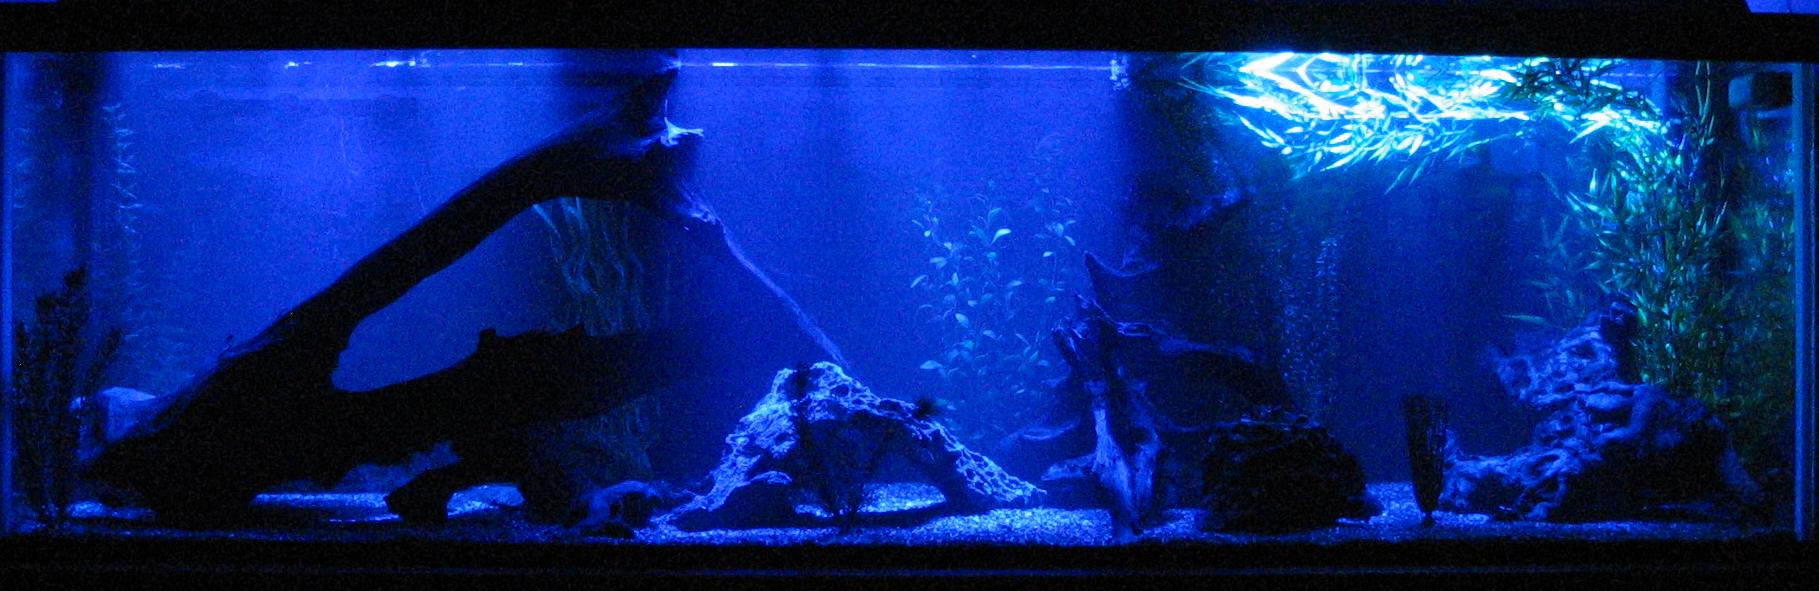 moonlight aquarium